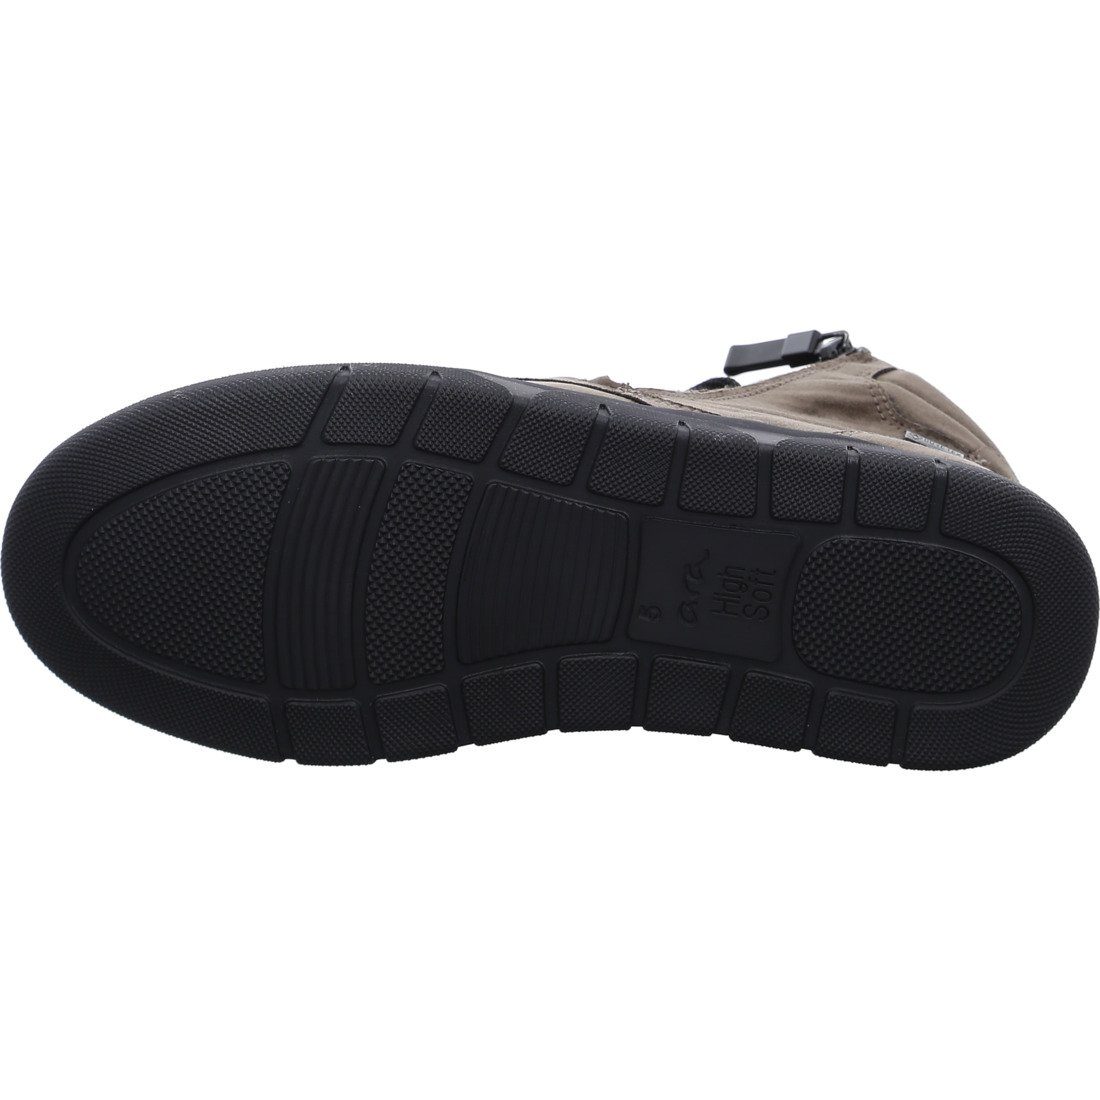 Textil Rom-Sport Ara Ara 046713 Schuhe, Stiefelette - grau Stiefelette